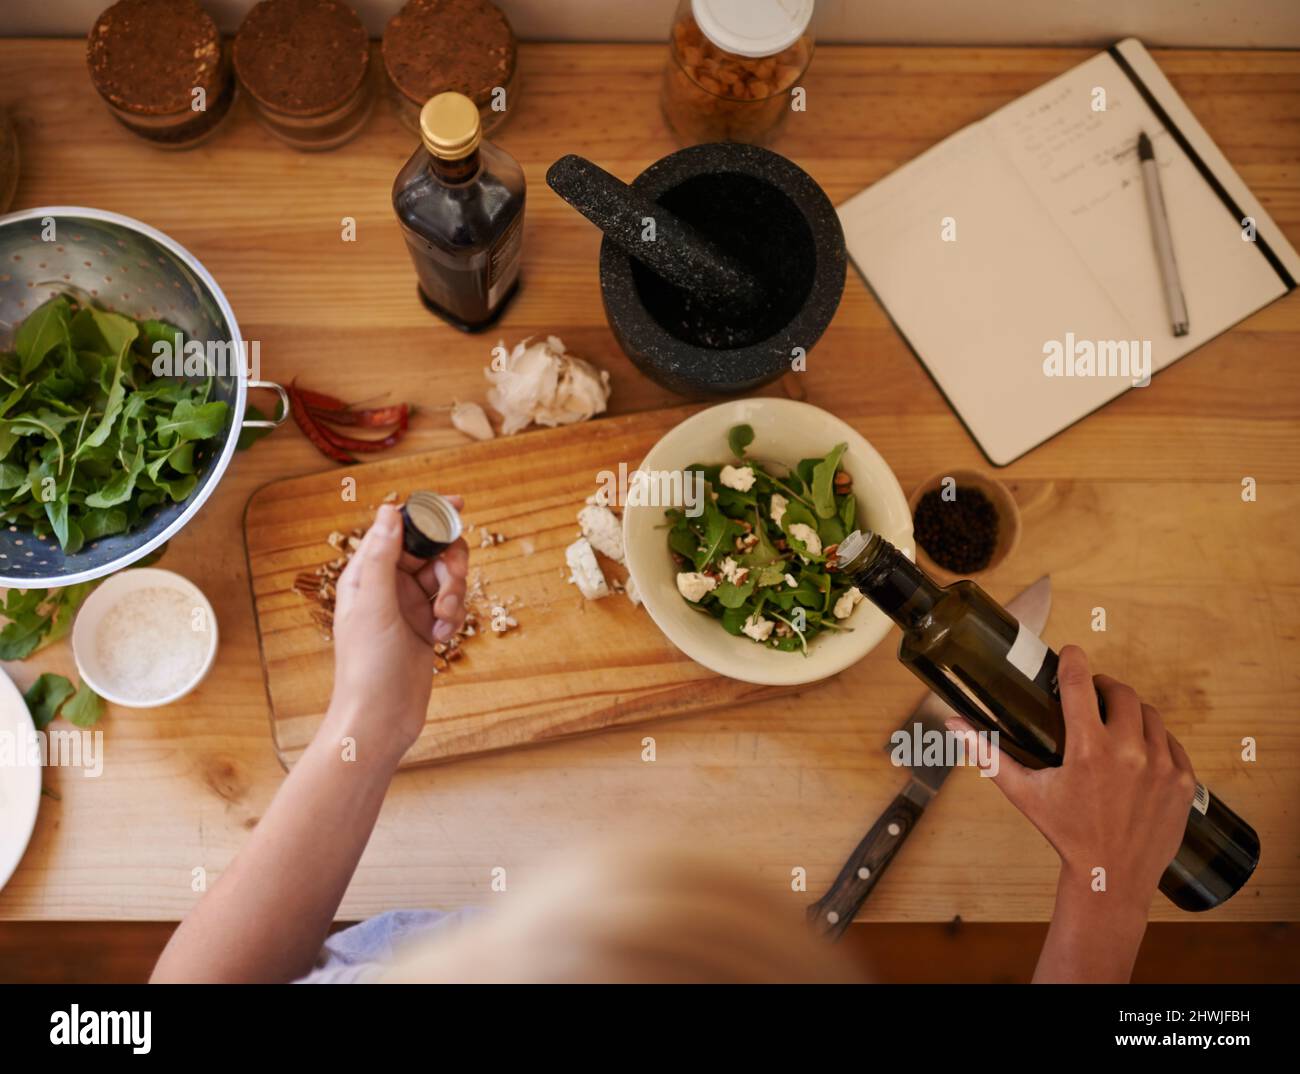 Une alimentation saine. Photo en grand angle d'une femme préparant une salade dans une cuisine. Banque D'Images